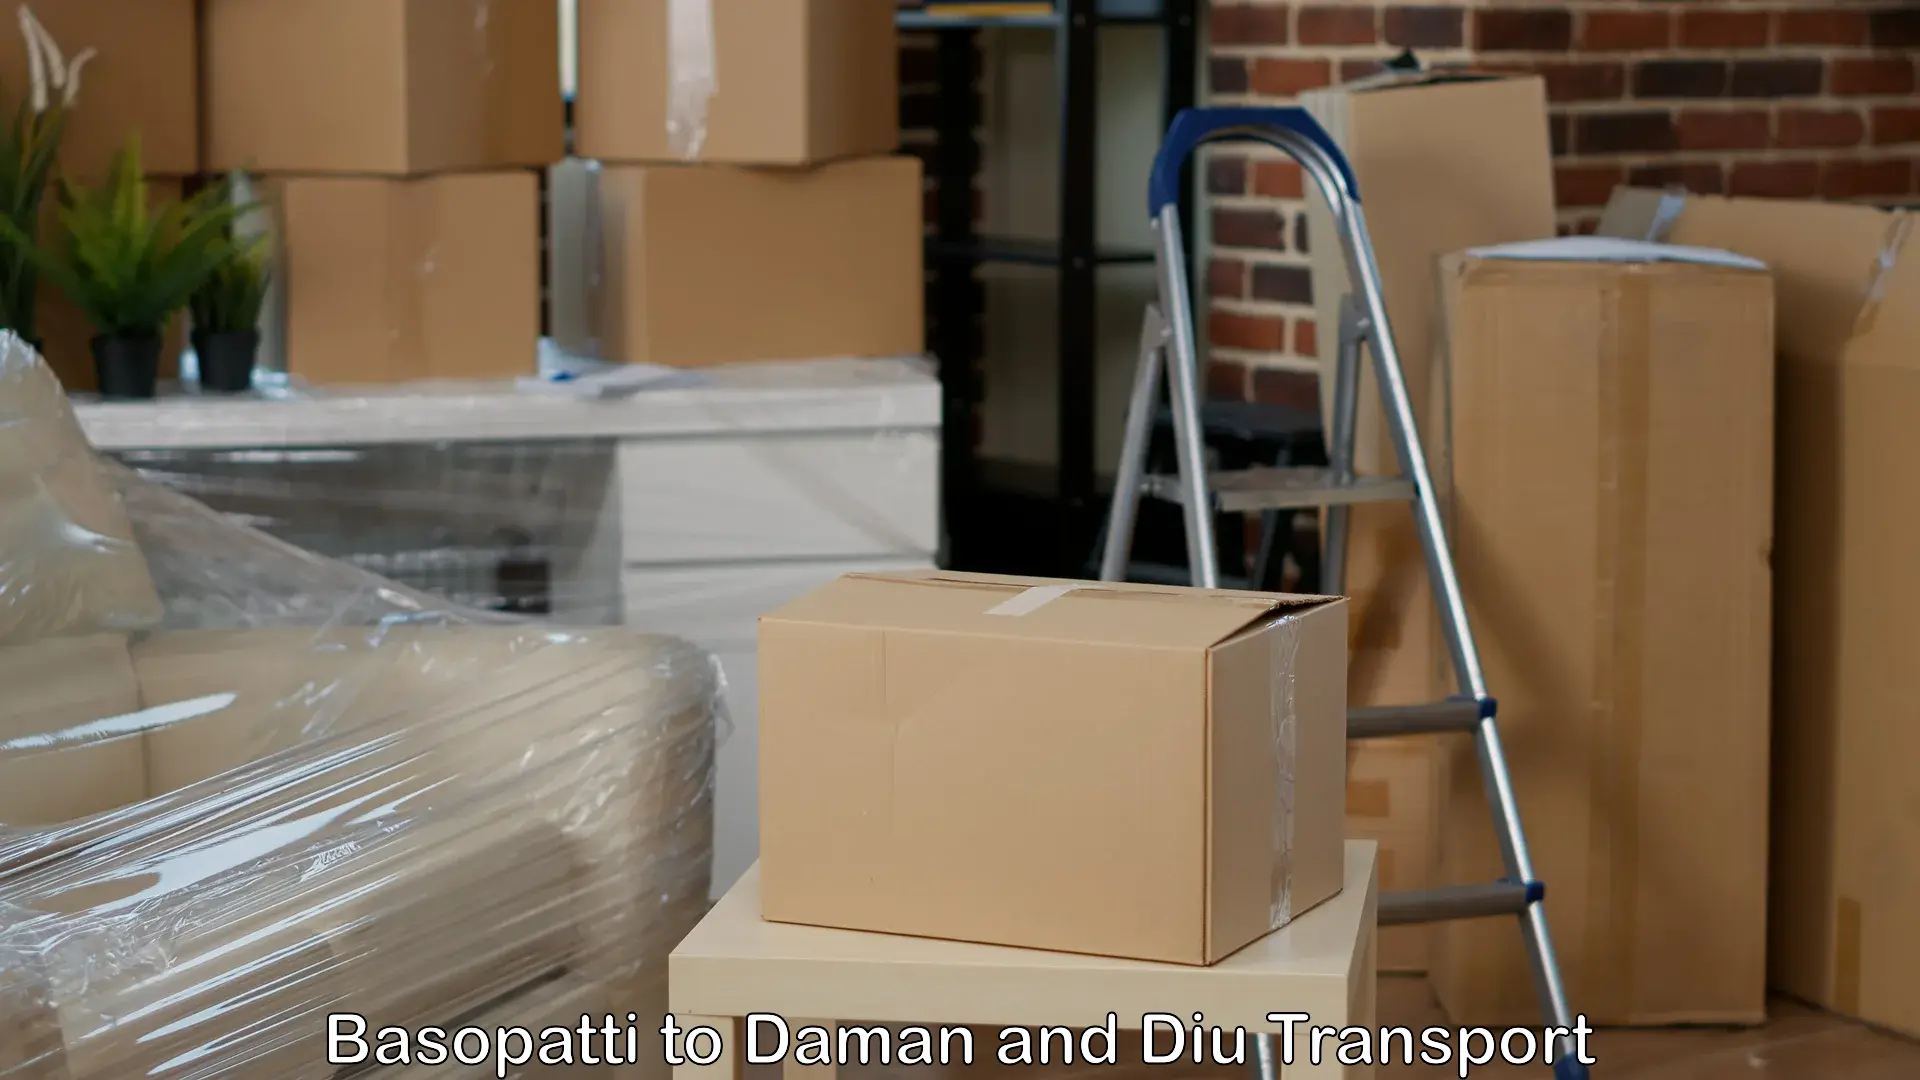 Furniture transport service Basopatti to Diu